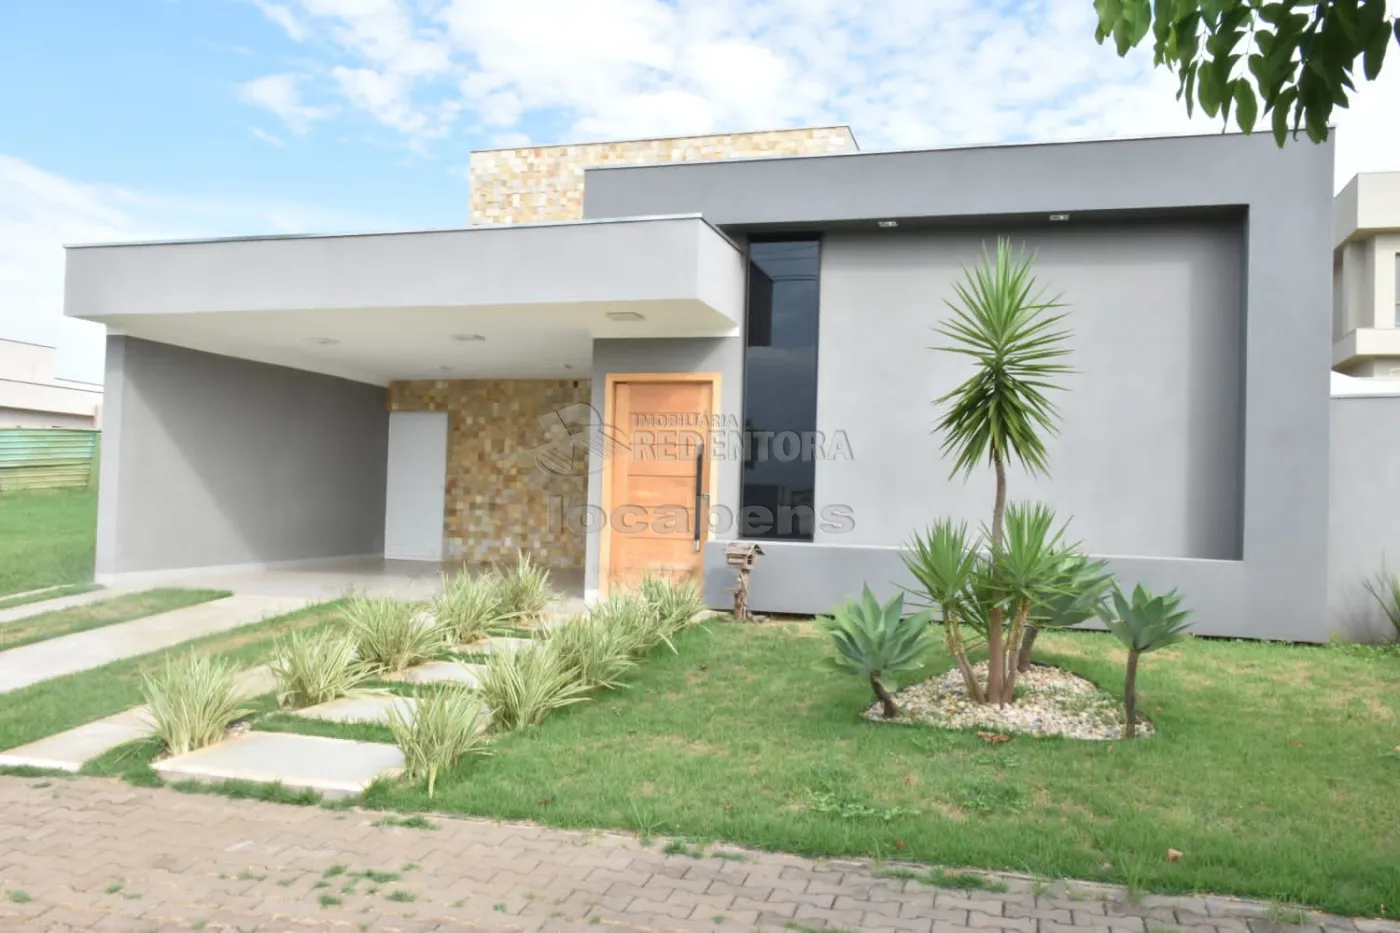 Comprar Casa / Condomínio em Mirassol apenas R$ 780.000,00 - Foto 1